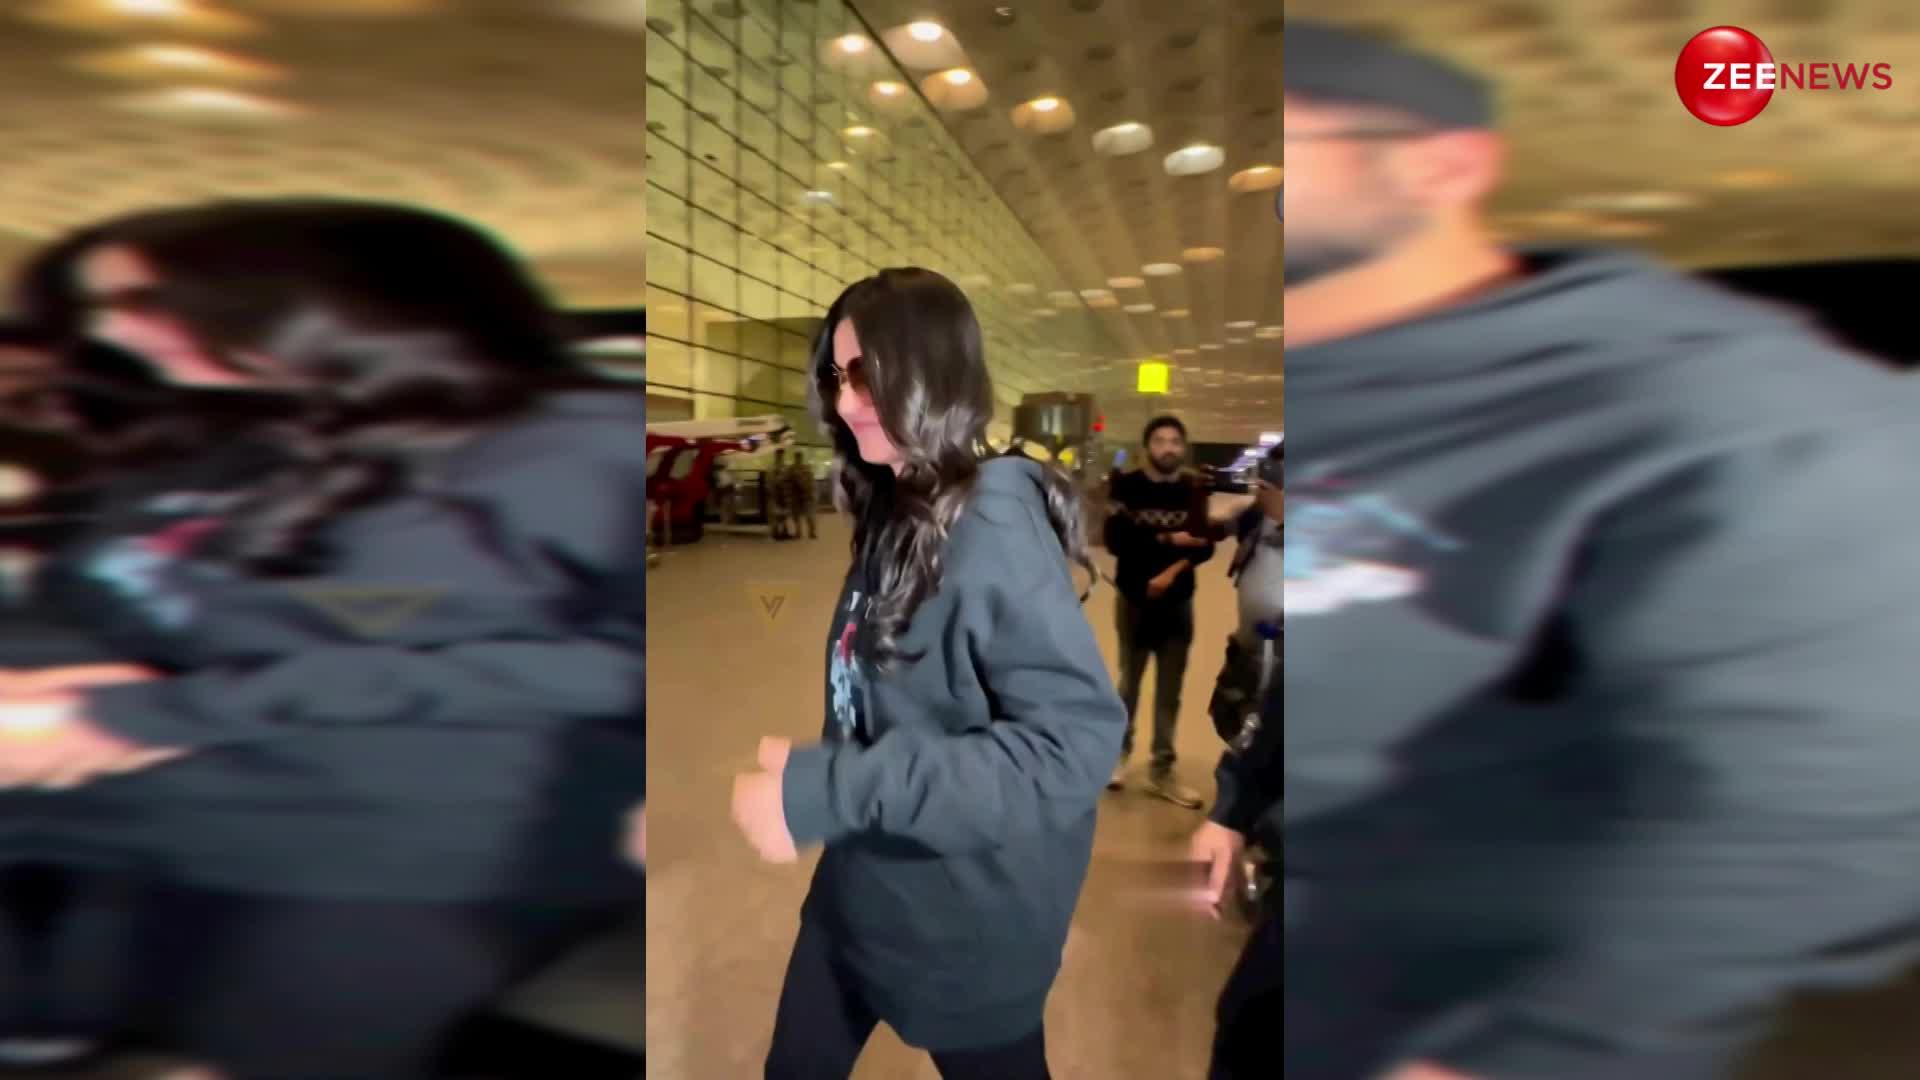 बॉलीवुड के परफेक्ट कपल सेम ऑउटफिट पहने एयरपोर्ट पर आए नजर, दोनों को साथ में देख लोग बोले- रब ने बना दी जोड़ी